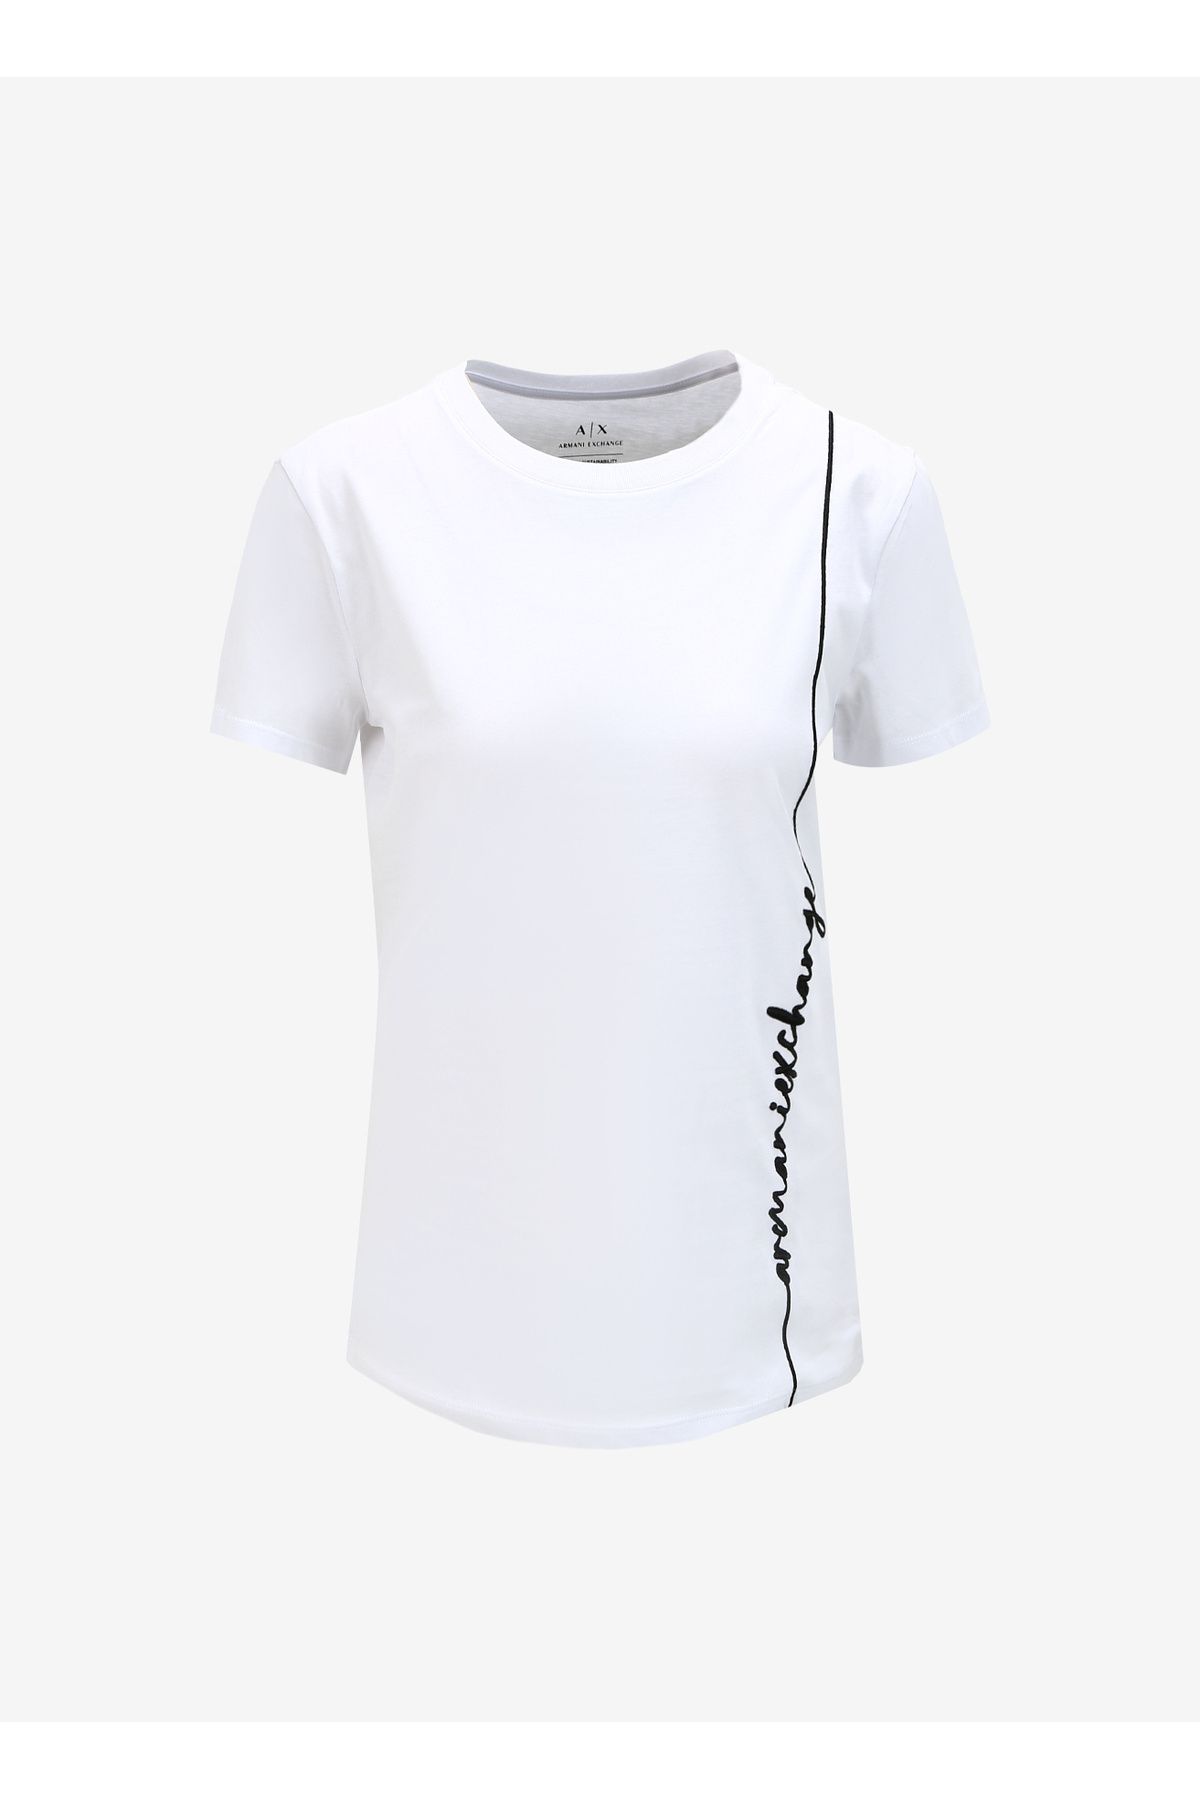 Armani Exchange Beyaz Kadın Bisiklet Yaka Baskılı T-Shirt.